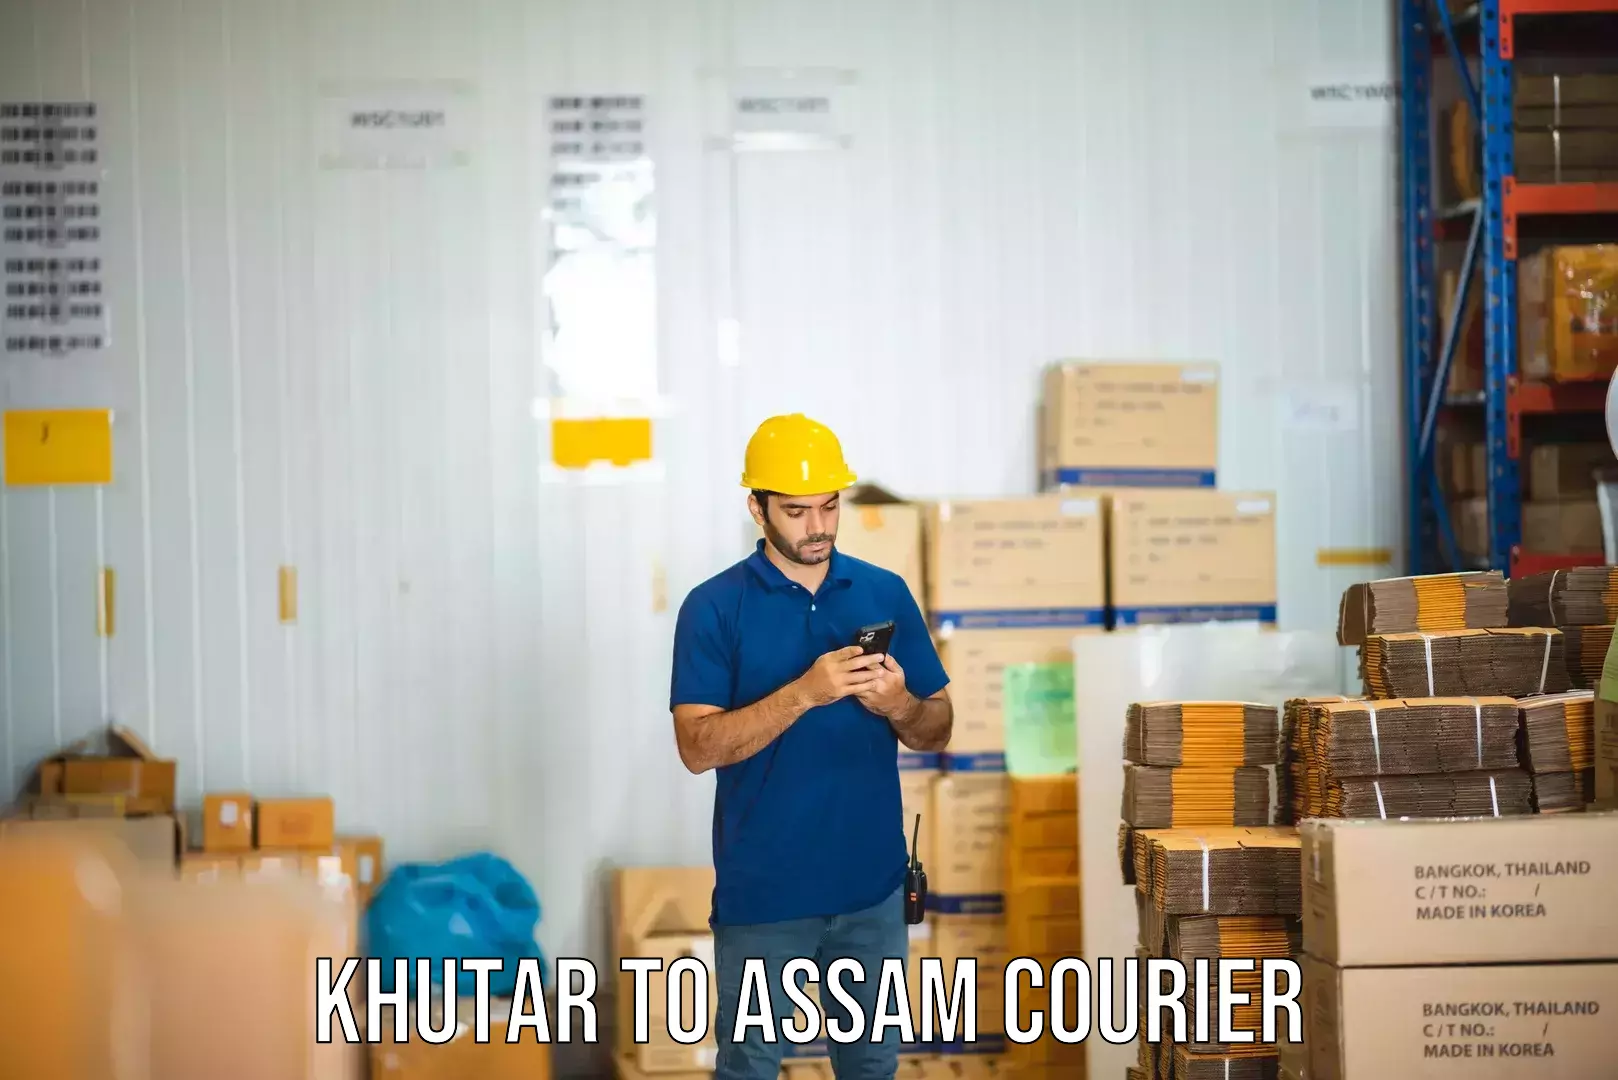 Fastest parcel delivery Khutar to Rajapara Khatajuli